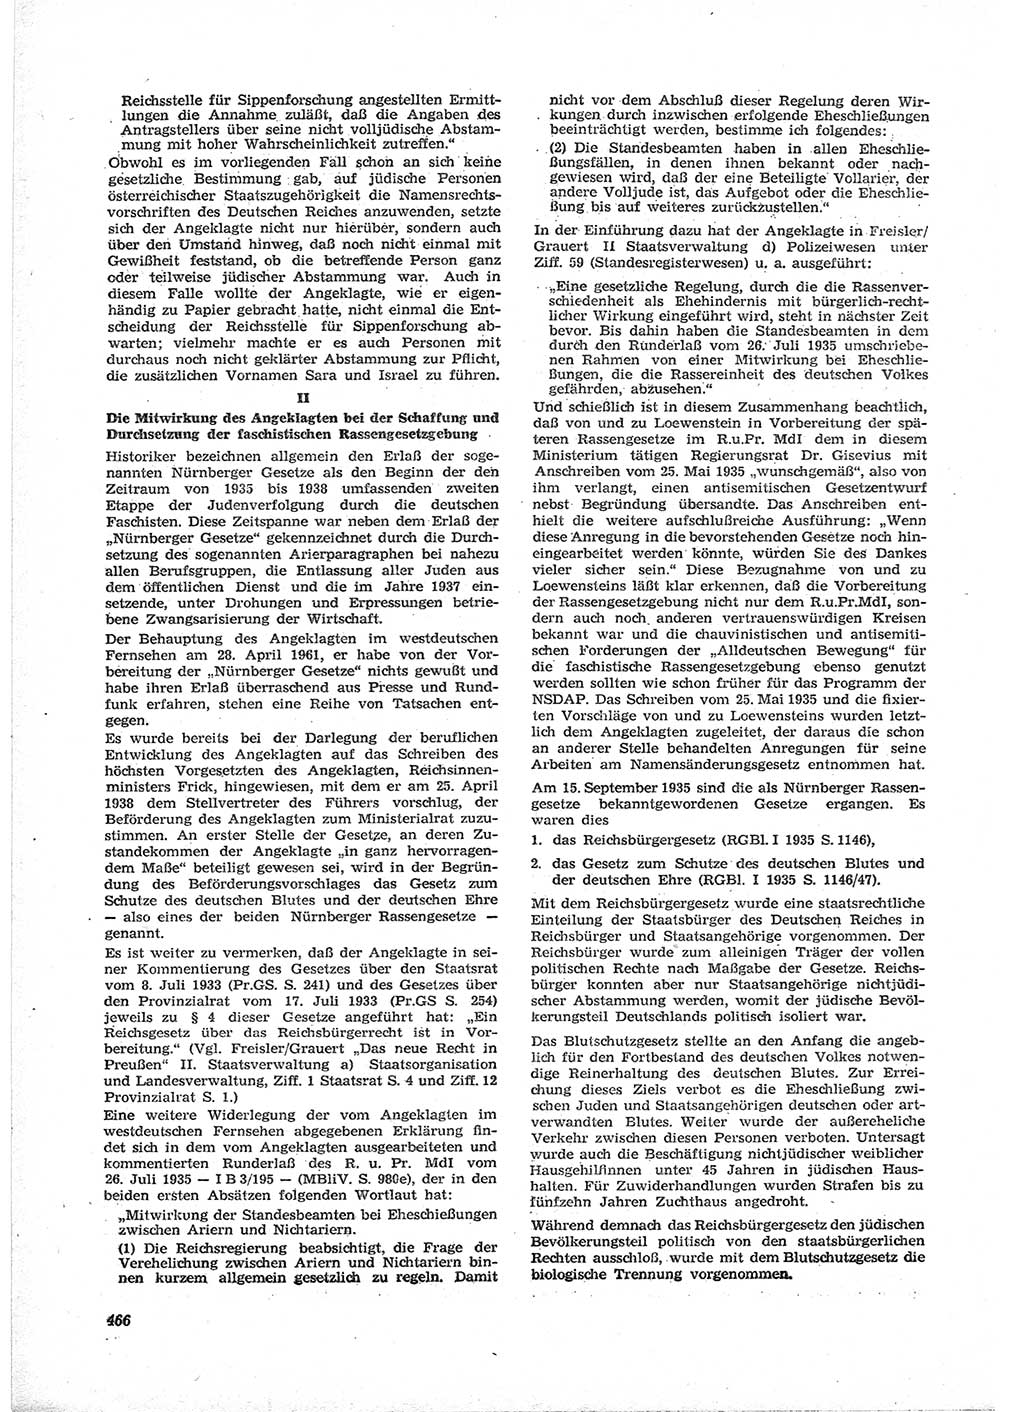 Neue Justiz (NJ), Zeitschrift für Recht und Rechtswissenschaft [Deutsche Demokratische Republik (DDR)], 17. Jahrgang 1963, Seite 466 (NJ DDR 1963, S. 466)